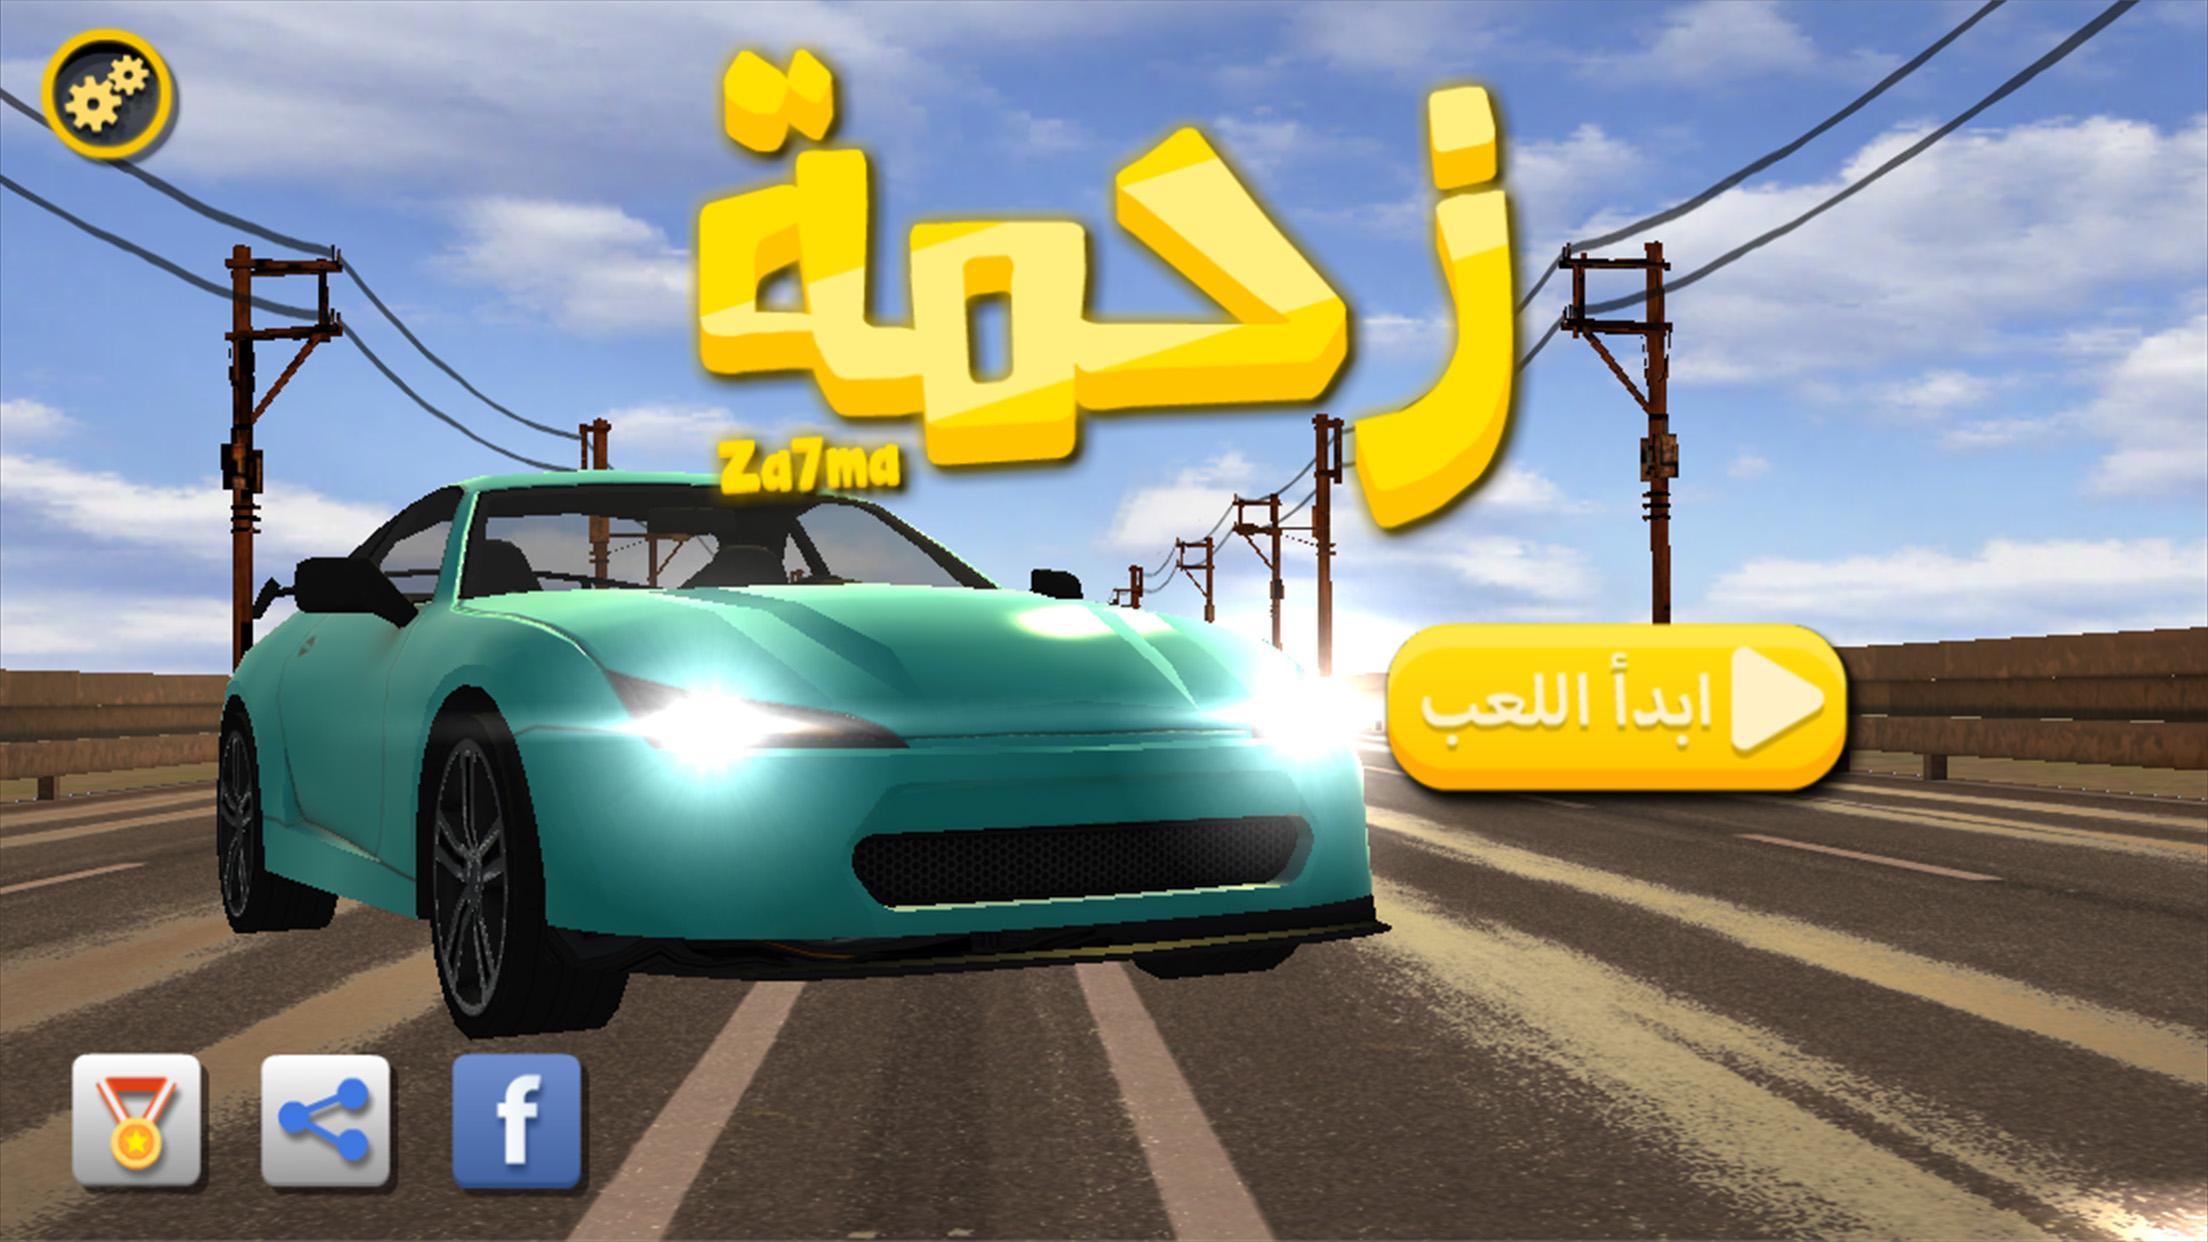 زحمة لعبة سيارات مغامرات عربية for Android - APK Download